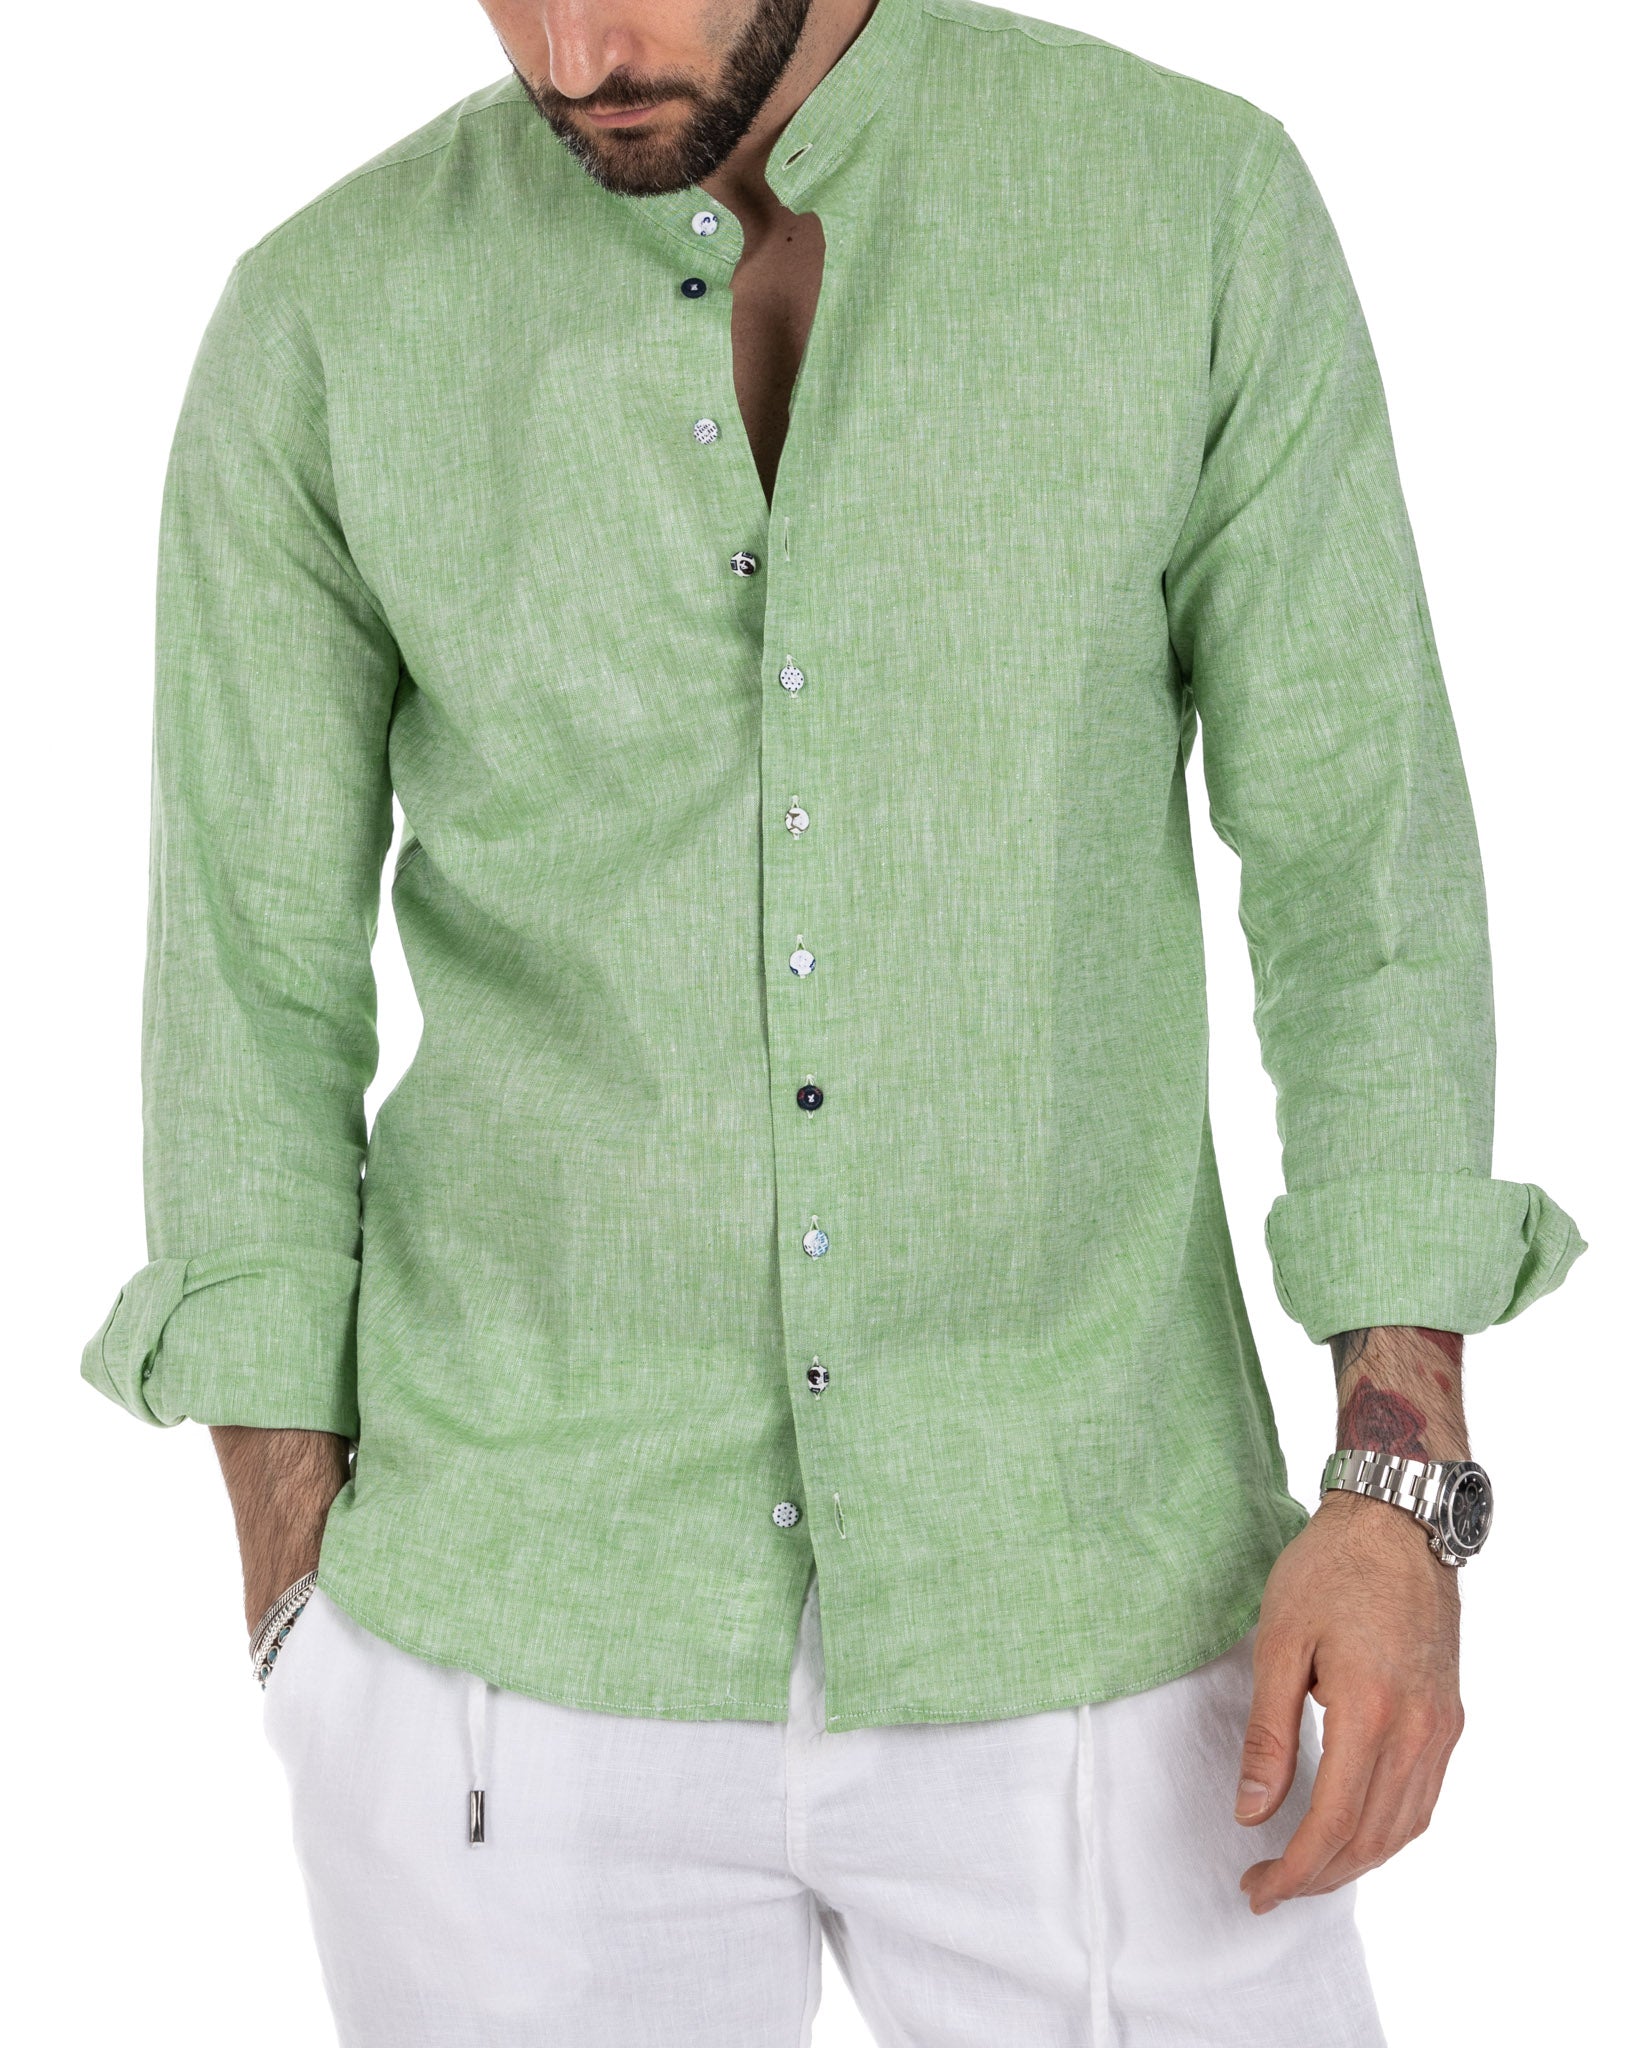 Positano - green linen Korean shirt